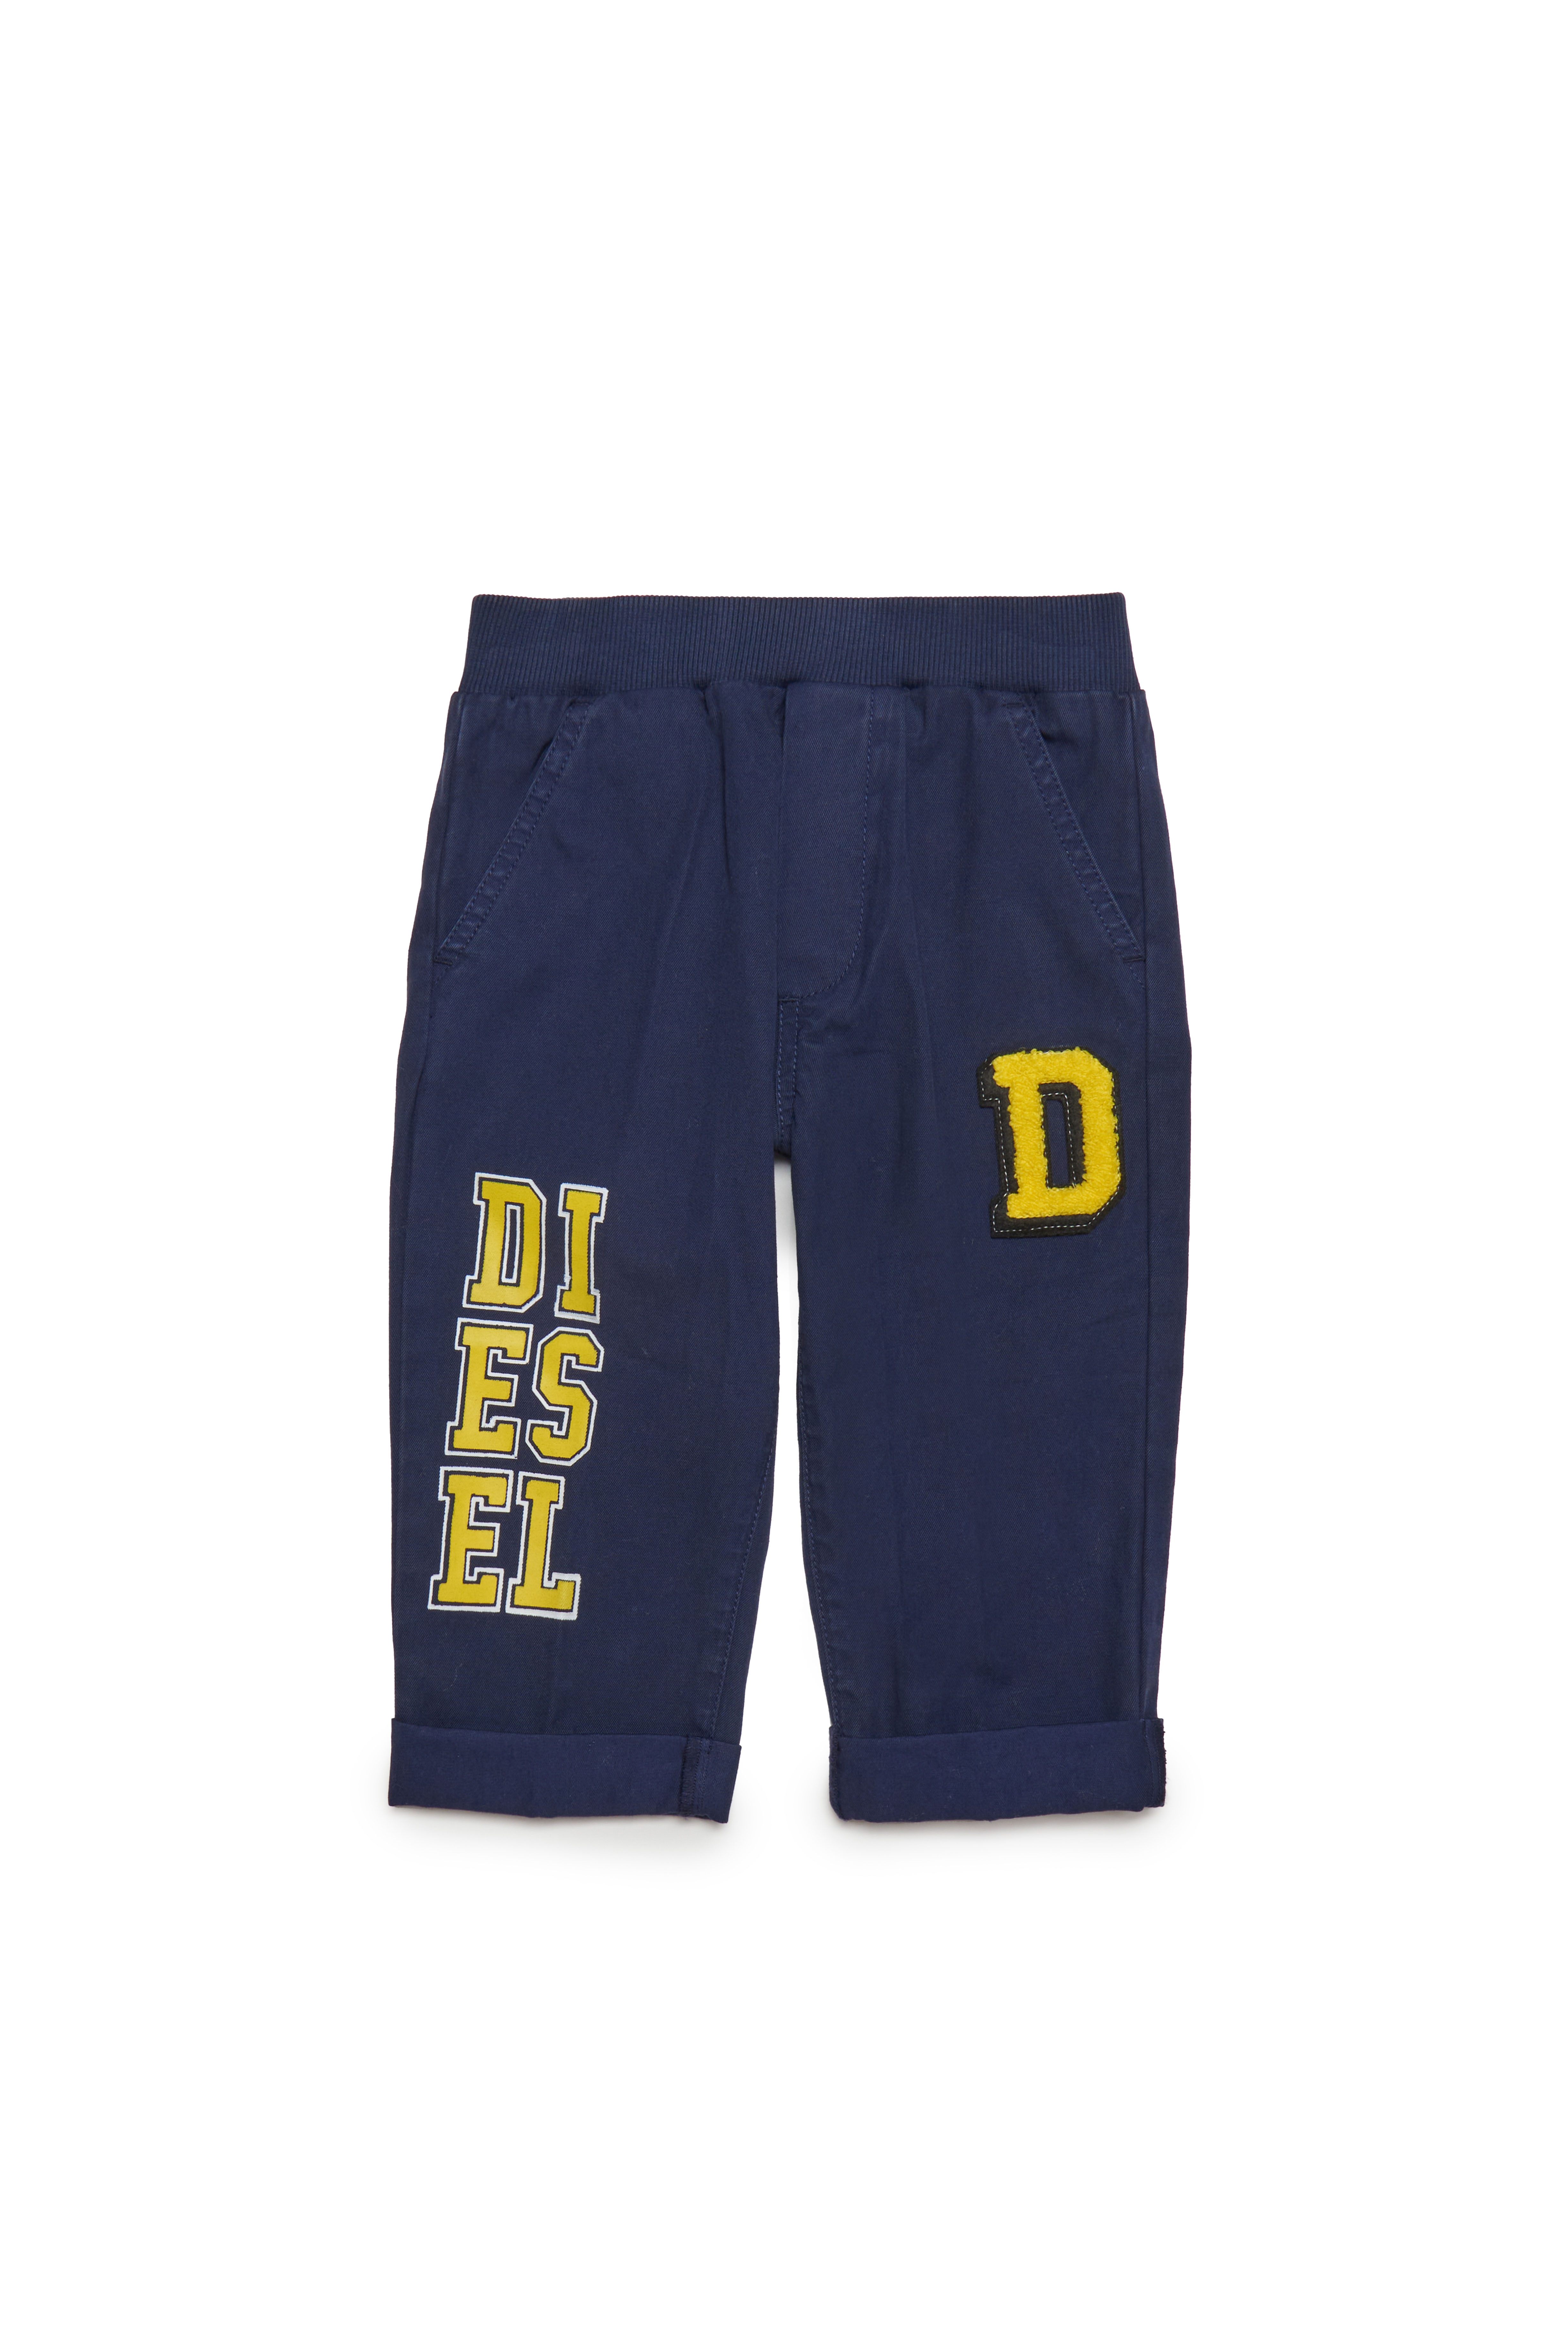 Diesel - Hose aus Baumwolle mit College-Logos - Hosen - Herren - Blau